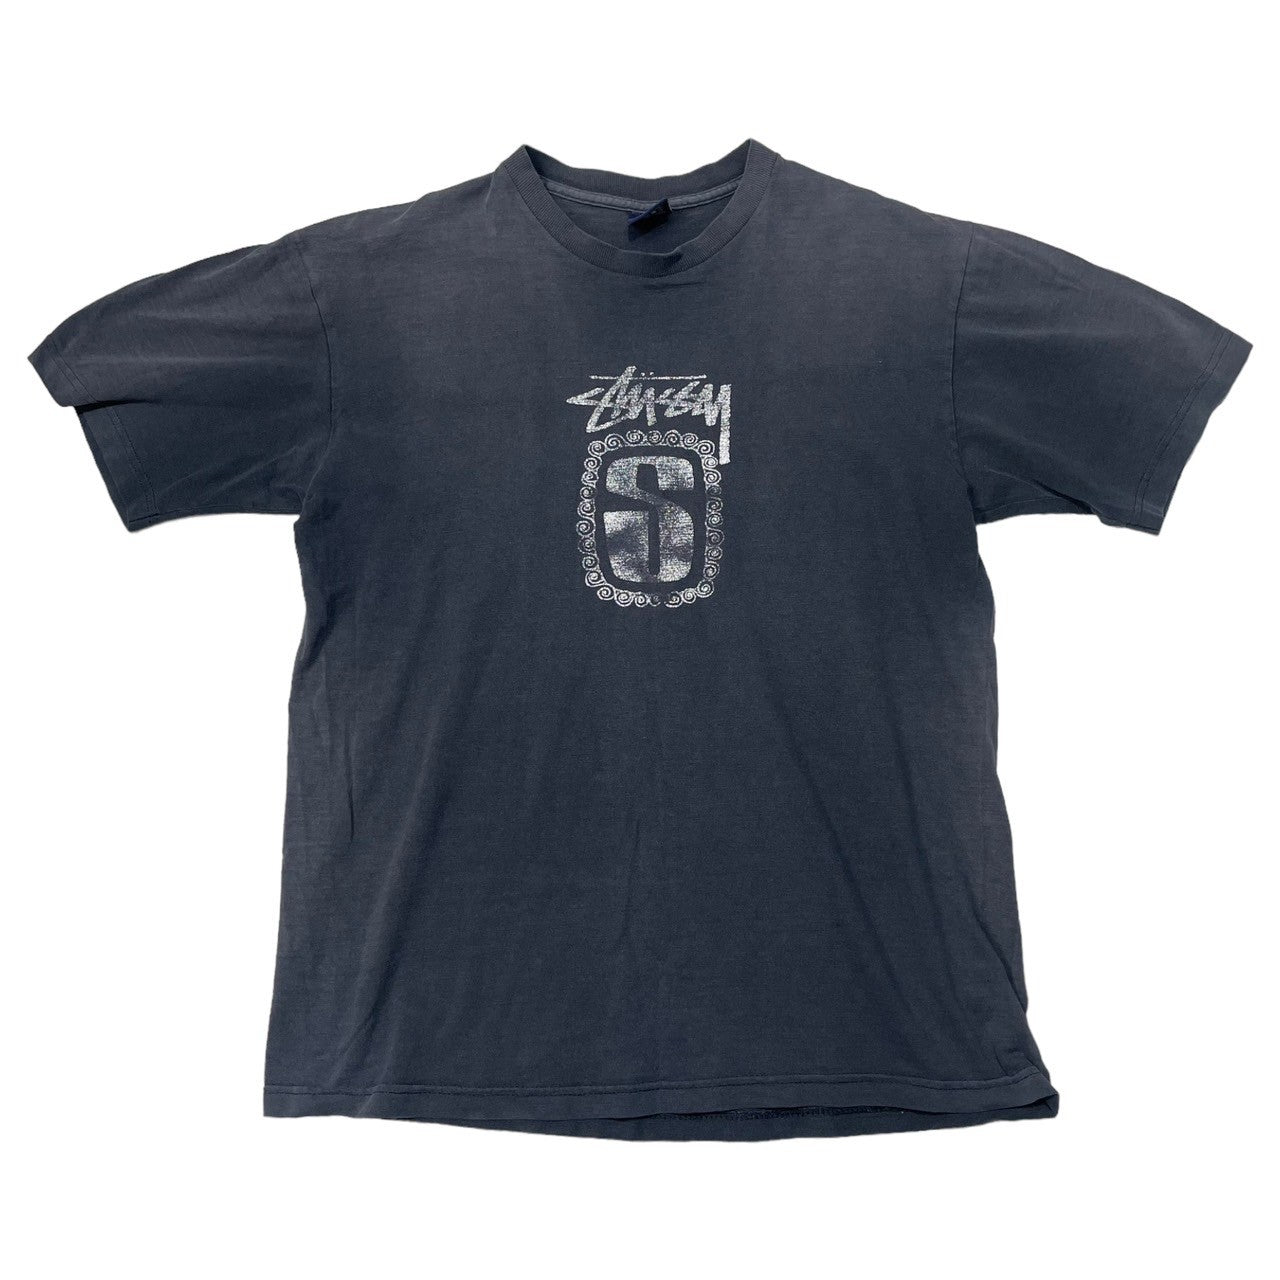 STUSSY(ステューシー) 90's~00's center logo Tシャツ センターロゴ 紺タグ SIZE M ネイビー×ホワイト  90～00年代 OLD STUSSY